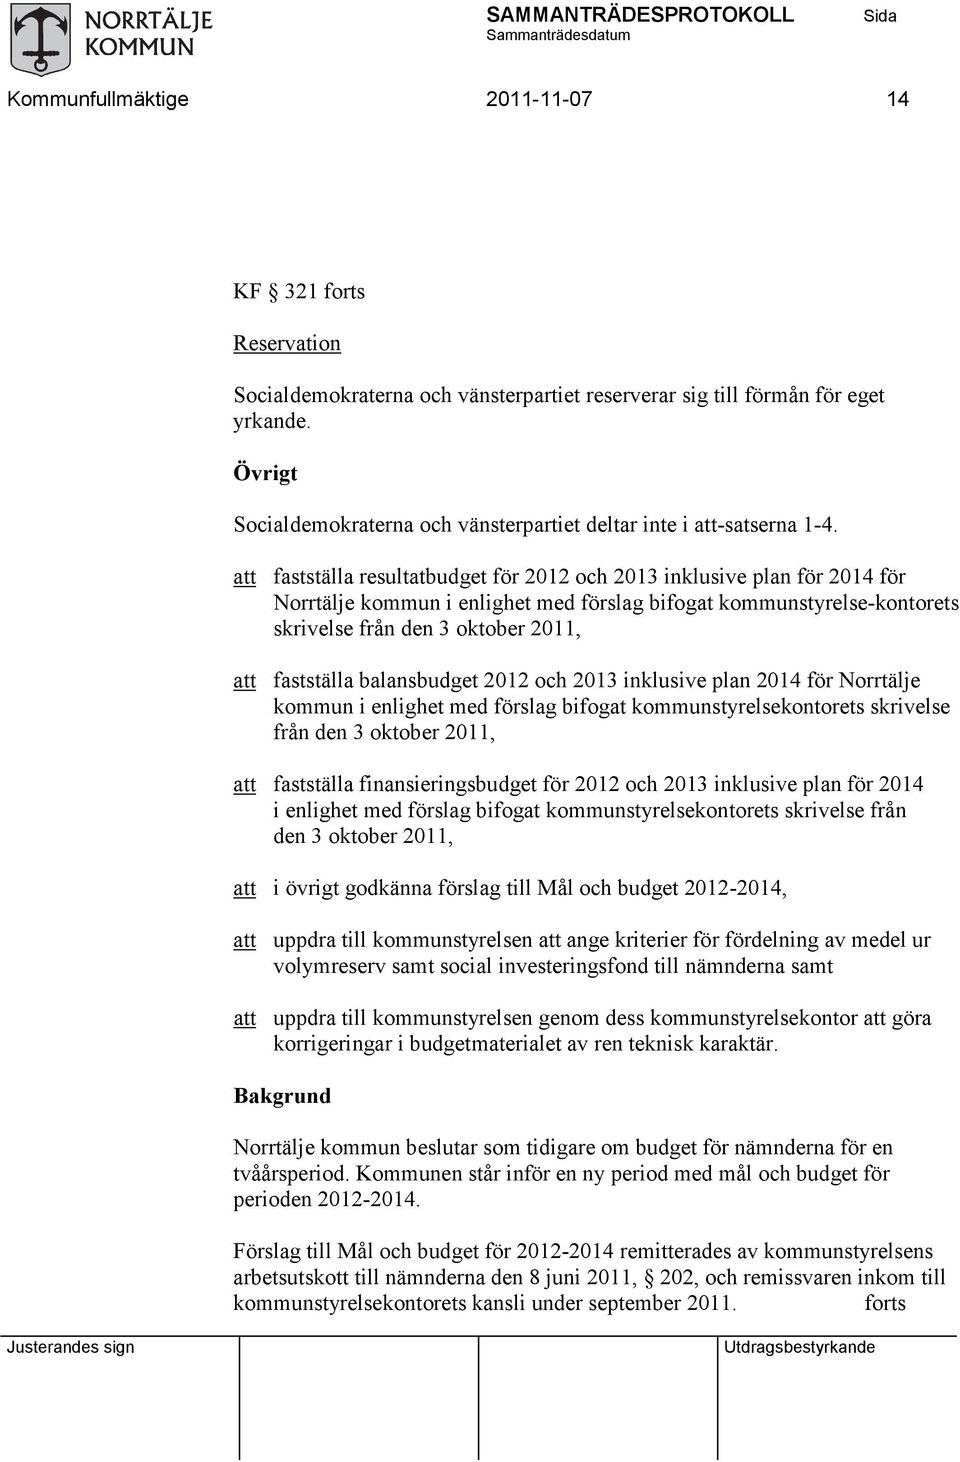 att fastställa resultatbudget för 2012 och 2013 inklusive plan för 2014 för Norrtälje kommun i enlighet med förslag bifogat kommunstyrelse-kontorets skrivelse från den 3 oktober 2011, att fastställa